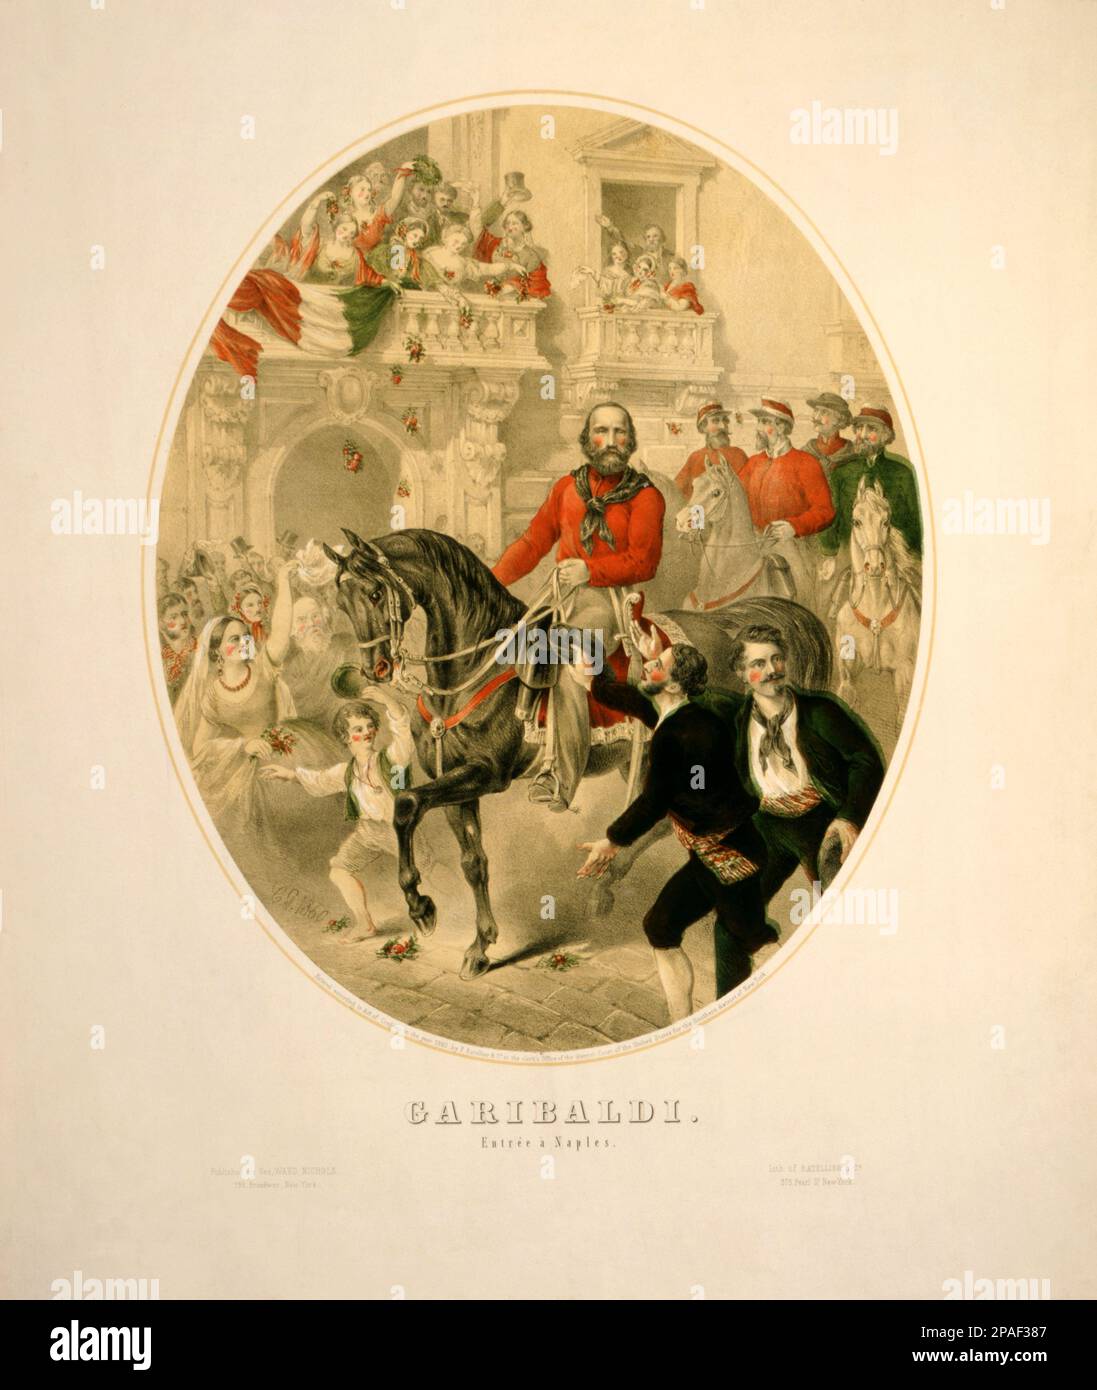 1860 , NAPLES ,  ITALY : The italian politician GIUSEPPE GARIBALDI ( Nizza 1807 - Caprera 1882 ) enter in NAPOLI , Italy . Engraving by Ratellier and George Ward Nichols publishing , New York , USA .- POLITICO - POLITICA - POLITIC  - Unita' d' ITALIA - Risorgimento  - foto storiche - foto storica - HISTORY - incisione - portrait - ritratto - beard - barba - Naples  - horse - cavallo - ingresso trionfale ----      ARCHIVIO GBB Stock Photo